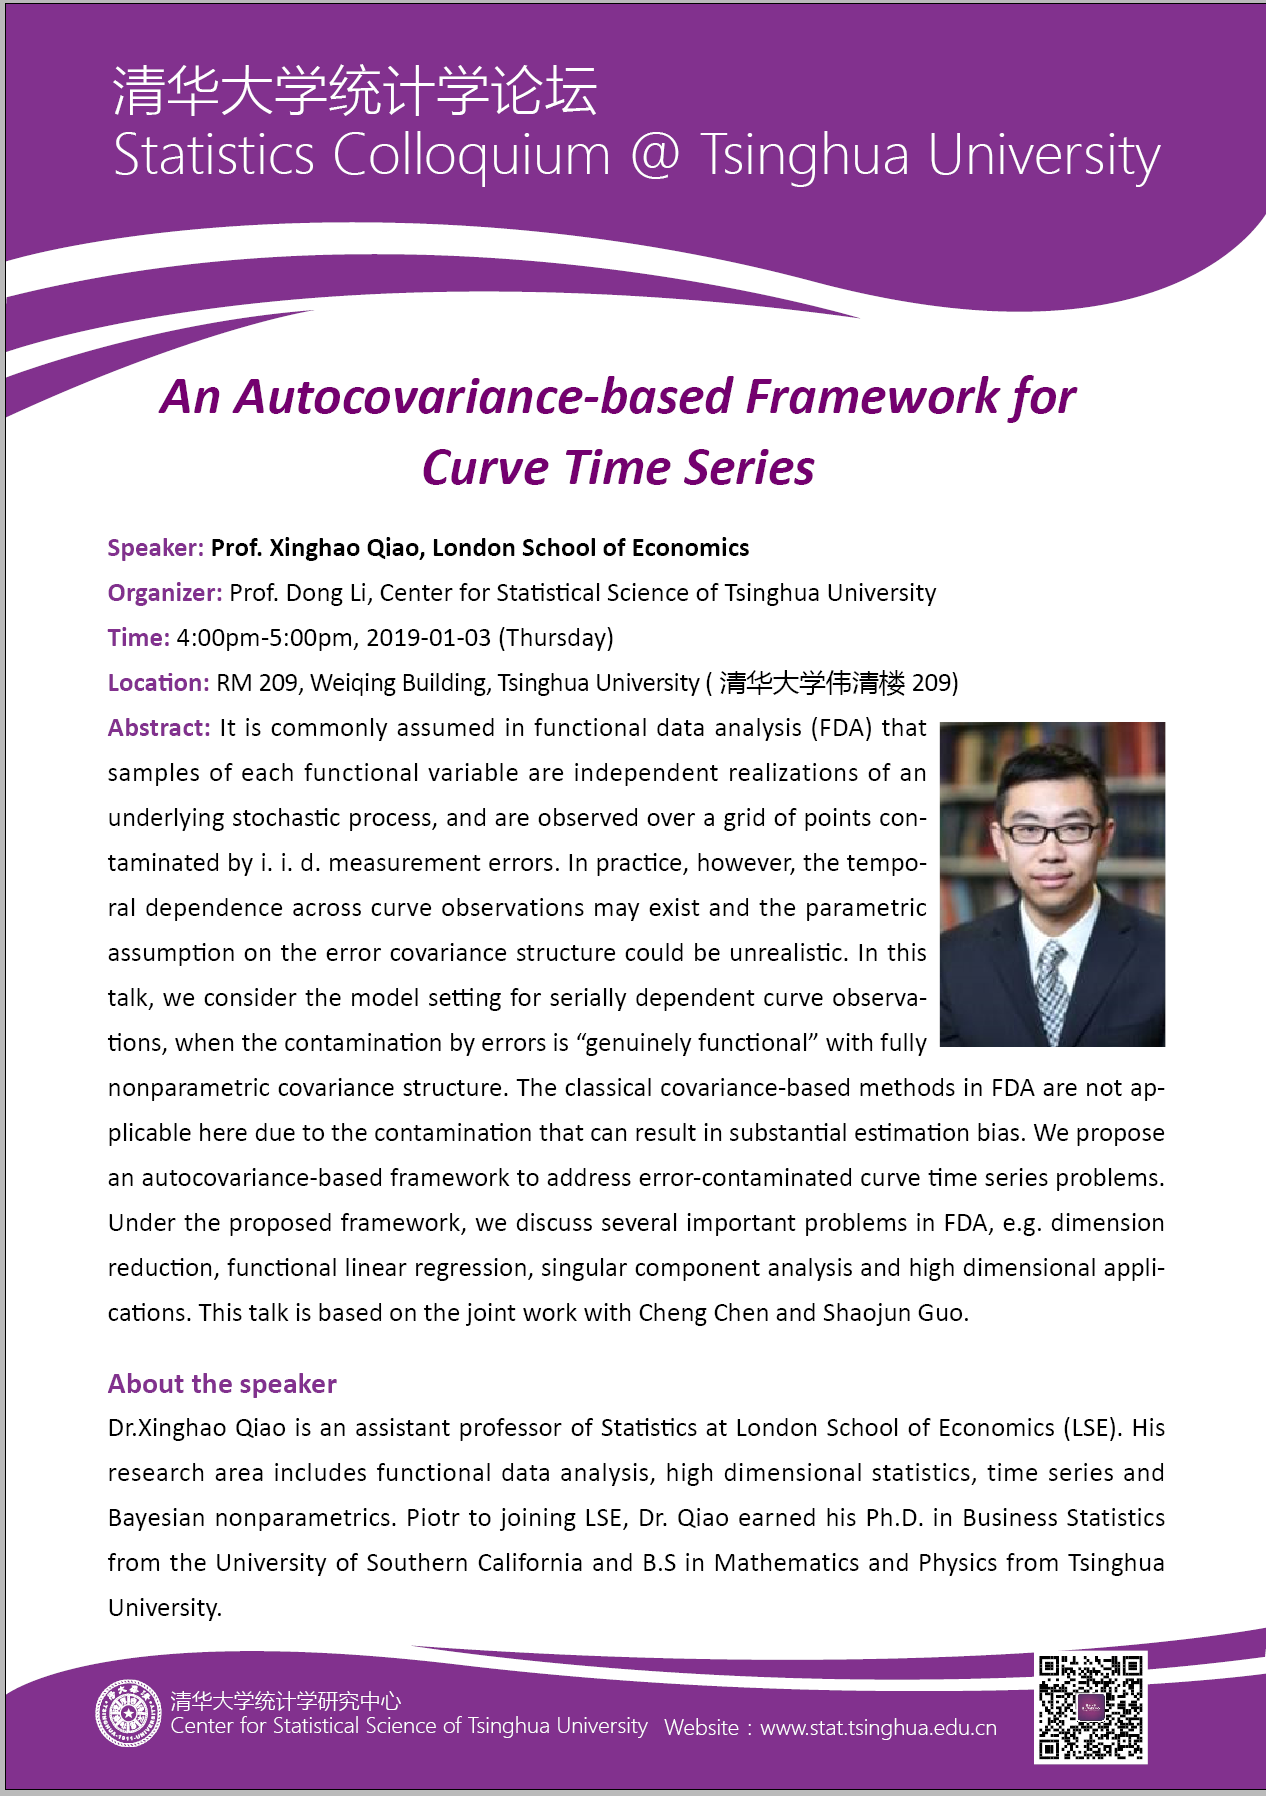 【统计学论坛】An Autocovariance-based Framework for Curve Time Series